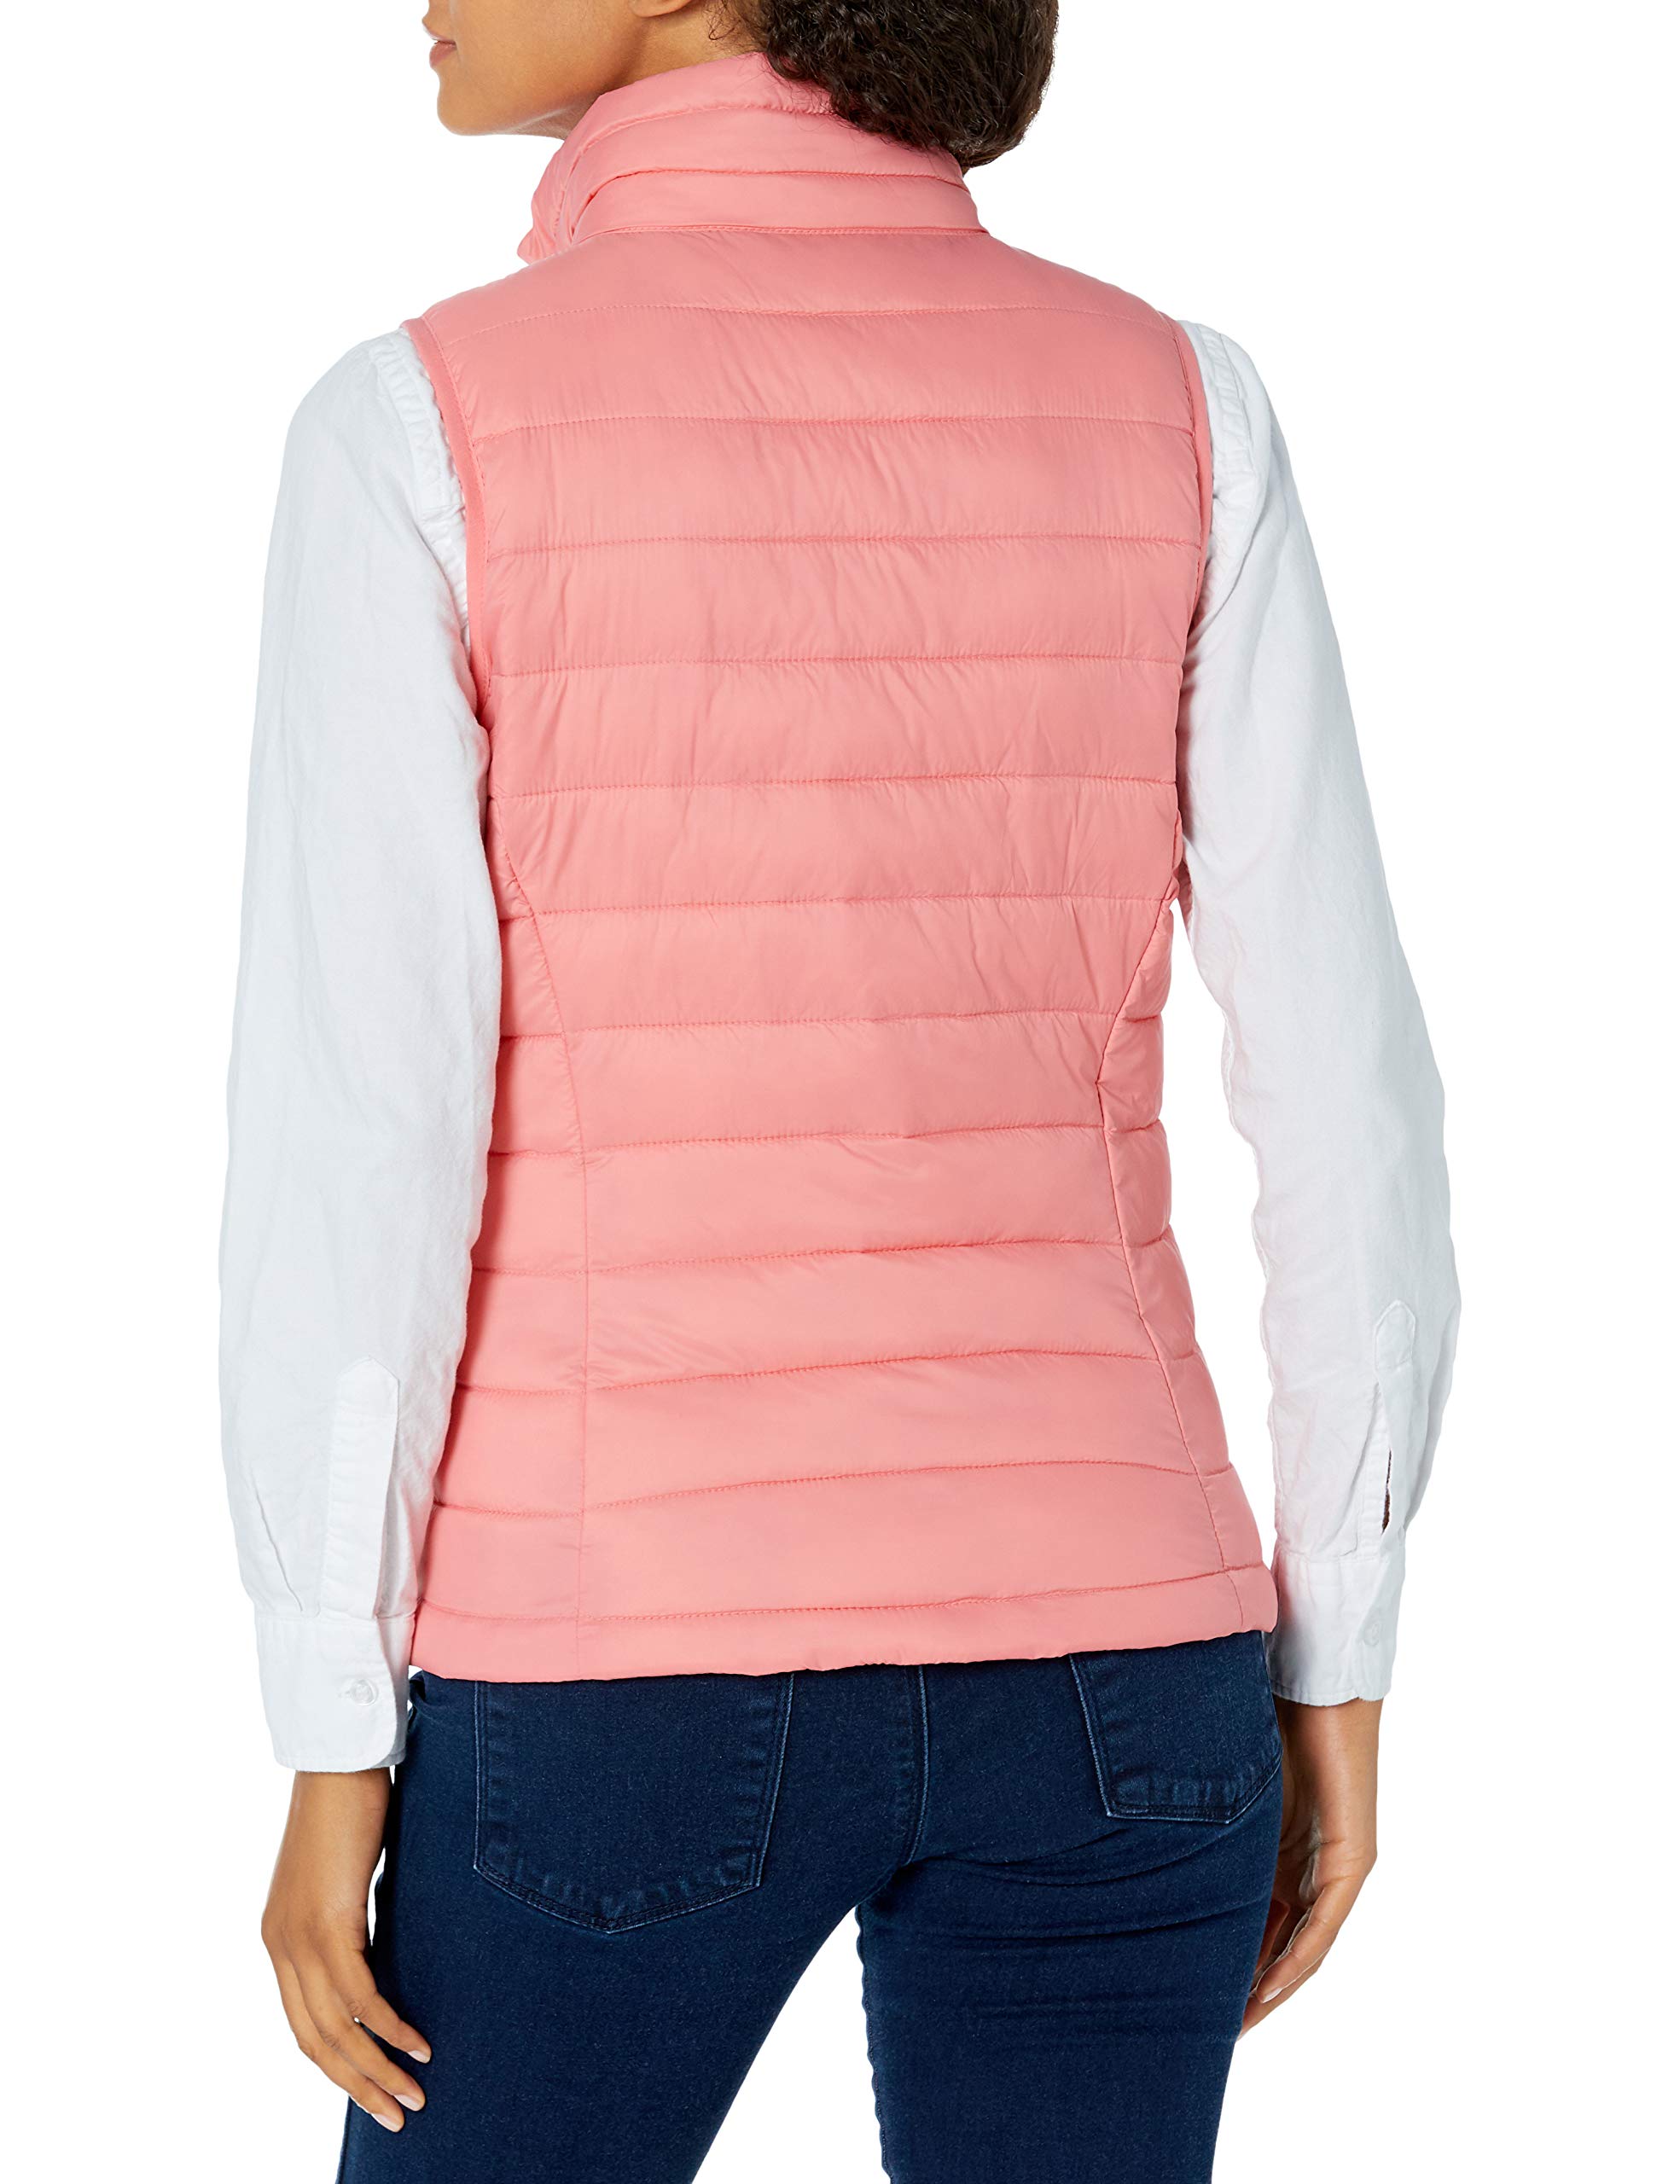 Amazon Essentials Women's Lightweight Water-Resistant Packable Puffer Vest